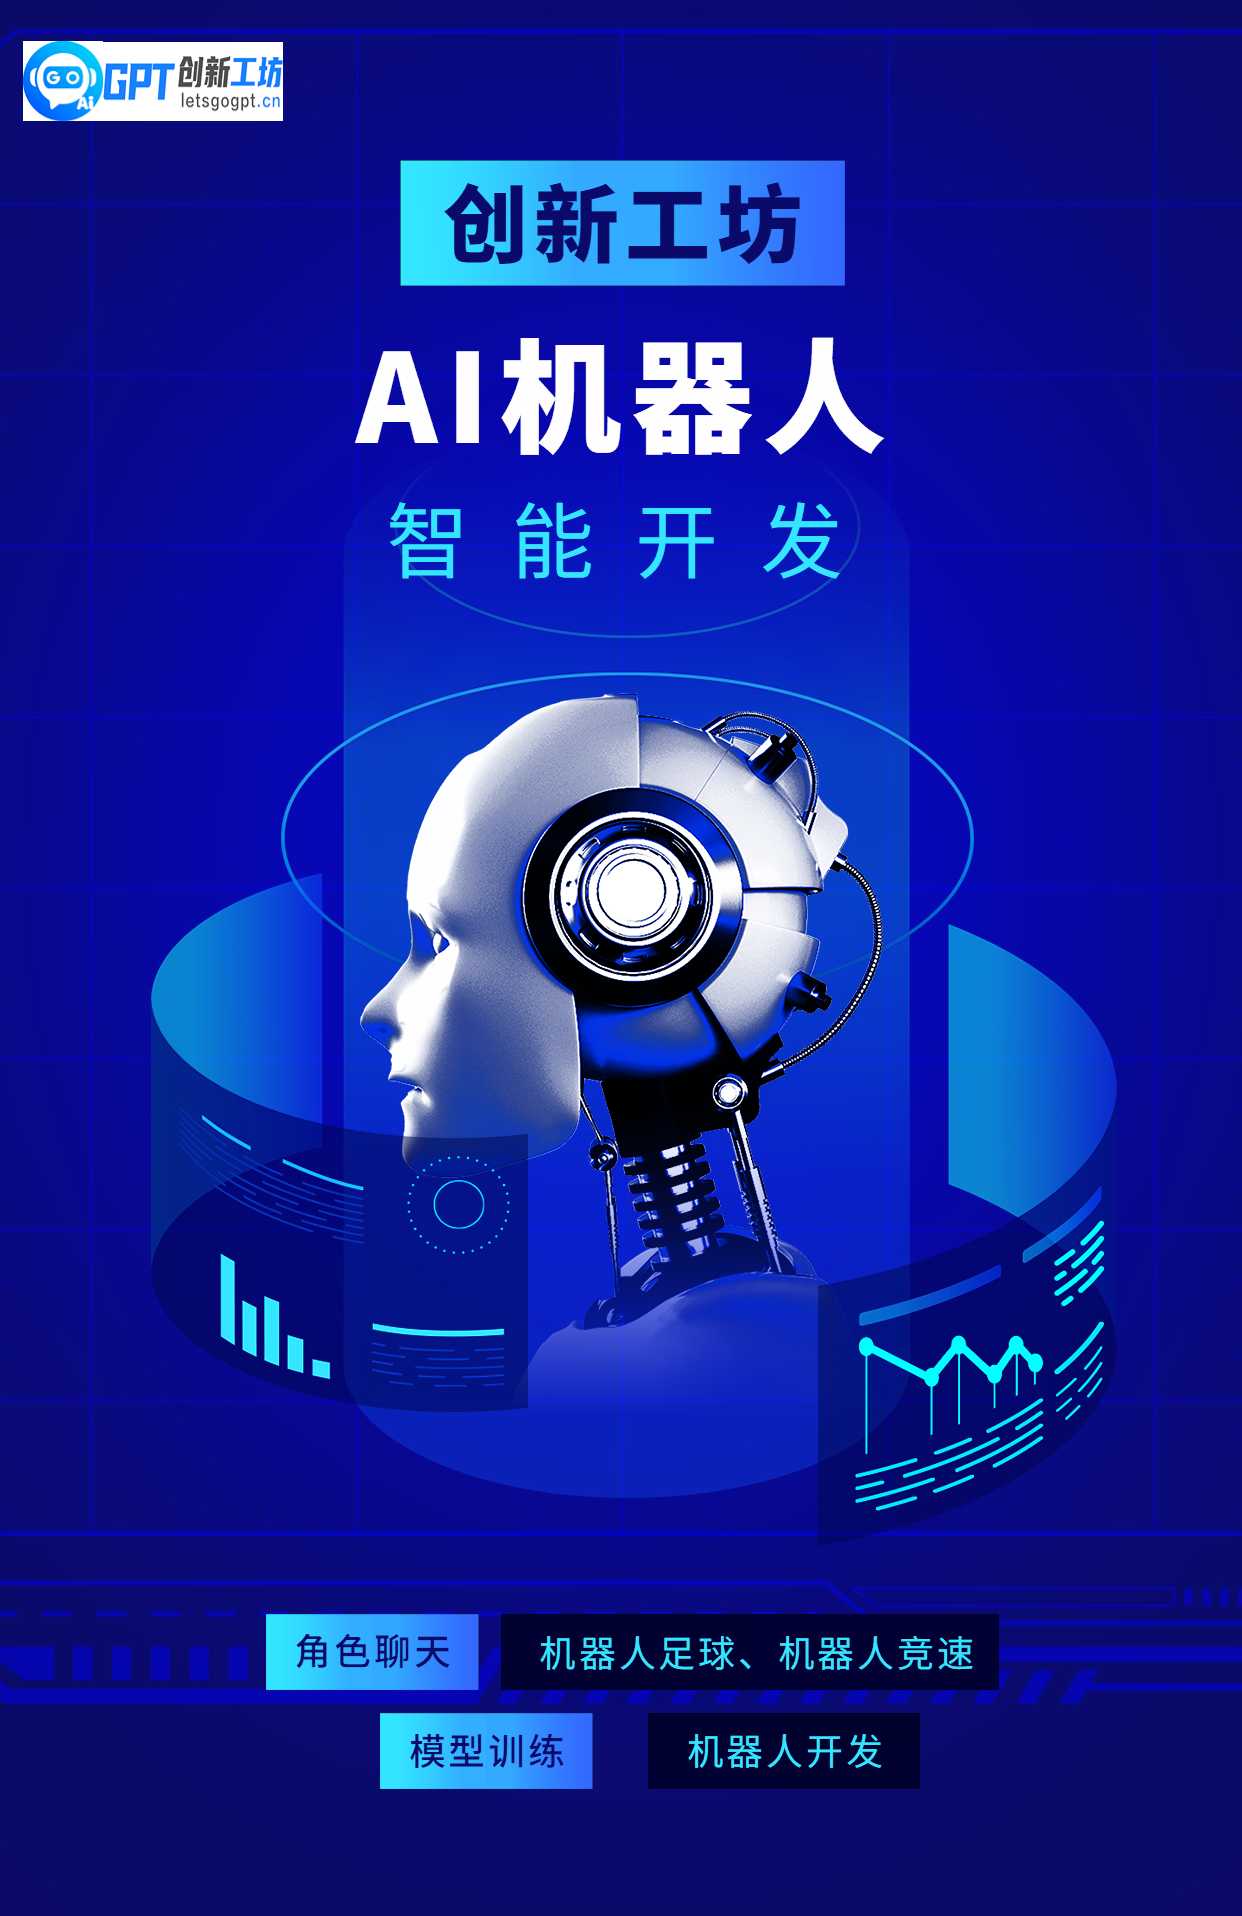 AI机器人大赛活动宣传海报.jpg